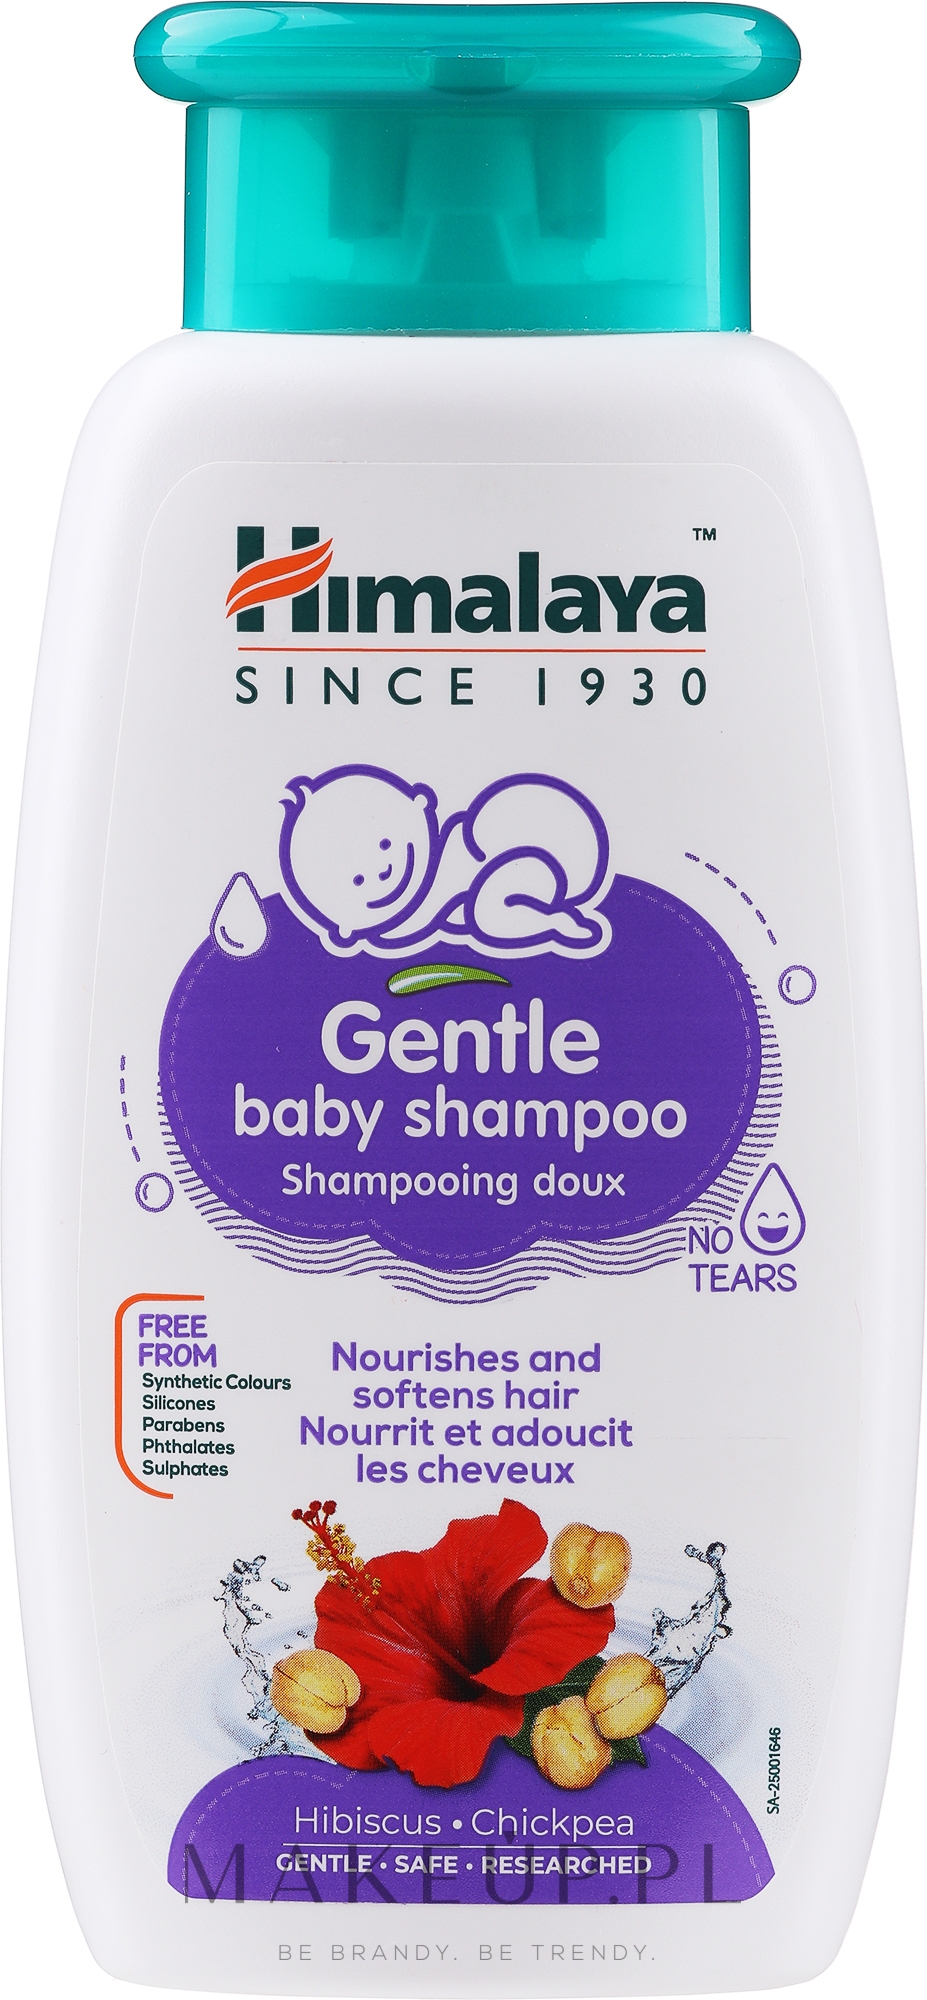 himalaya herbals szampon dla dzieci